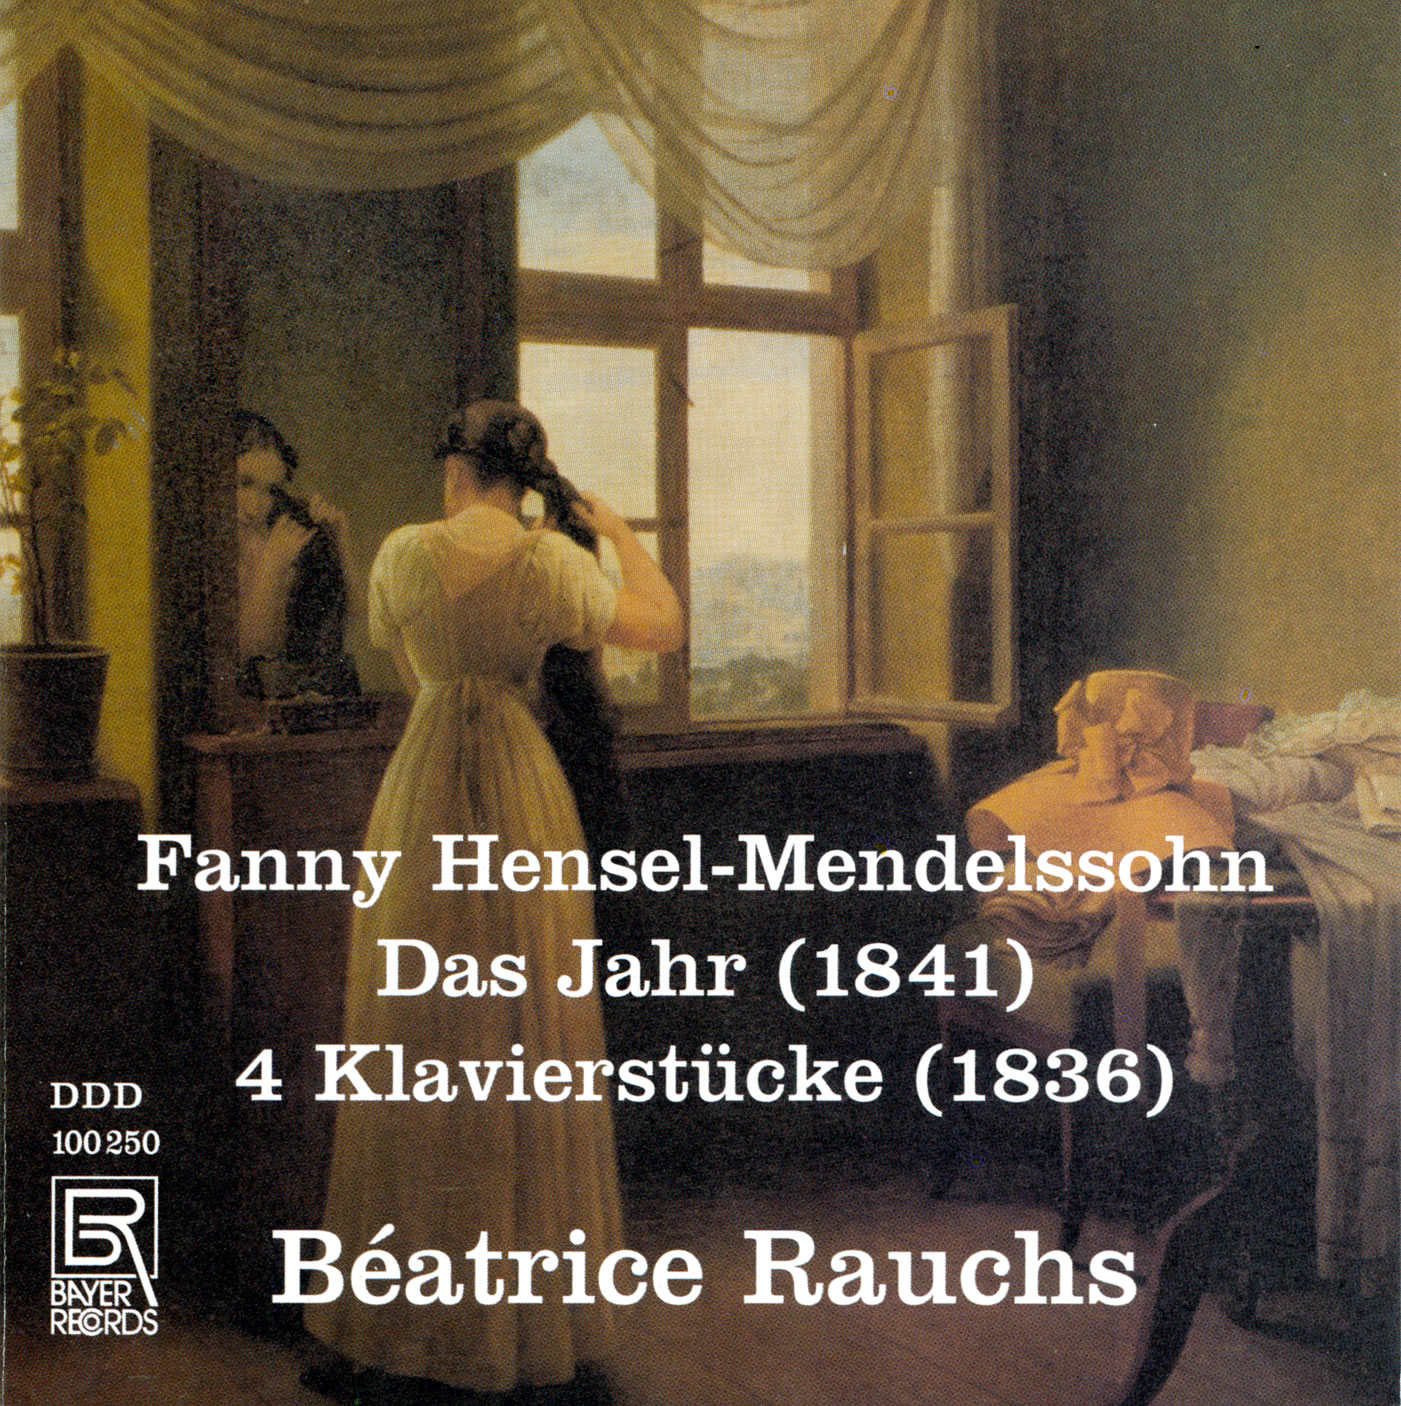 Fanny Hensel-Mendelssohn - Das Jahr